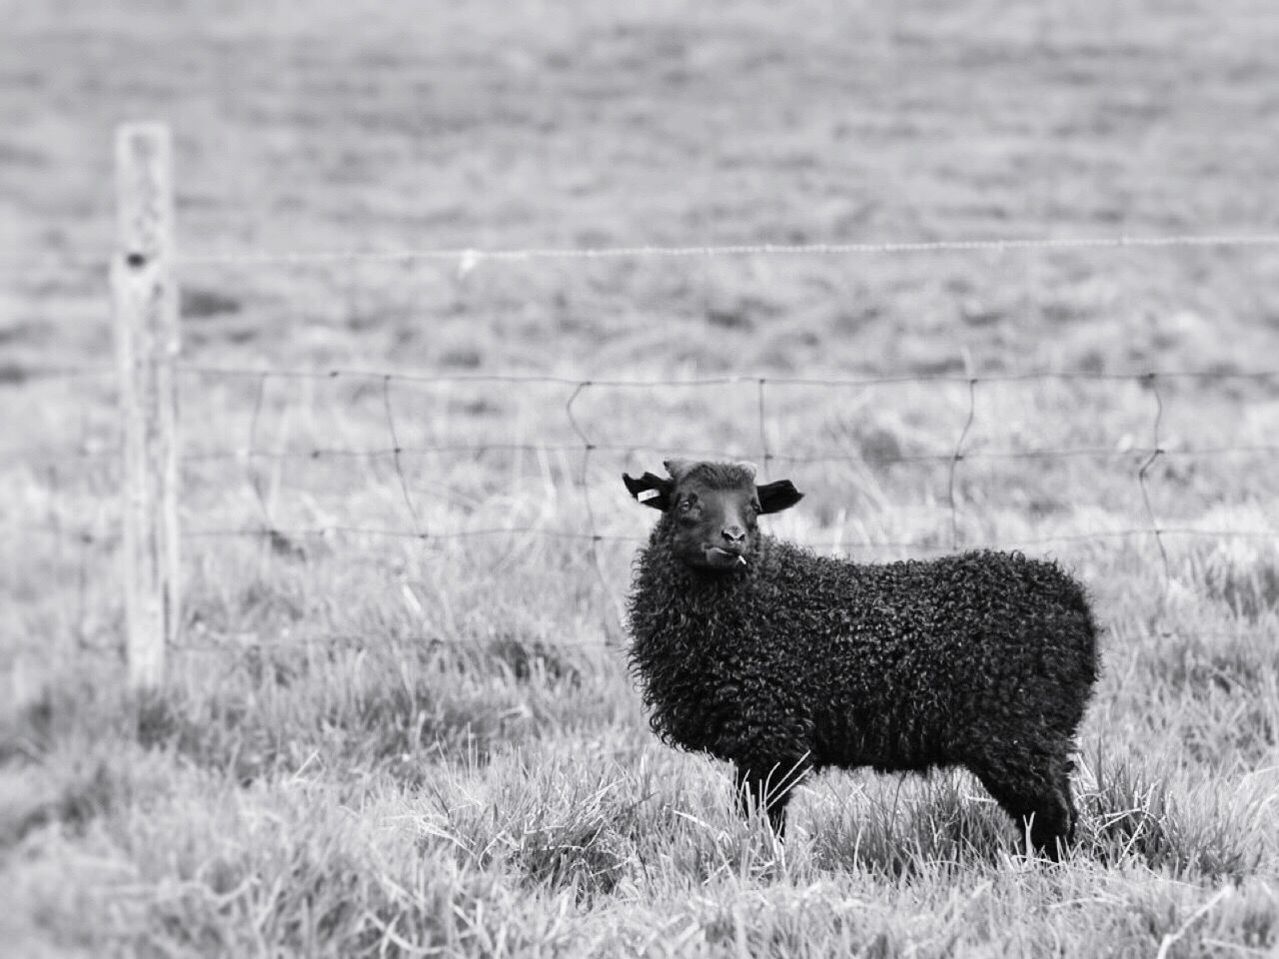 Black sheep in field